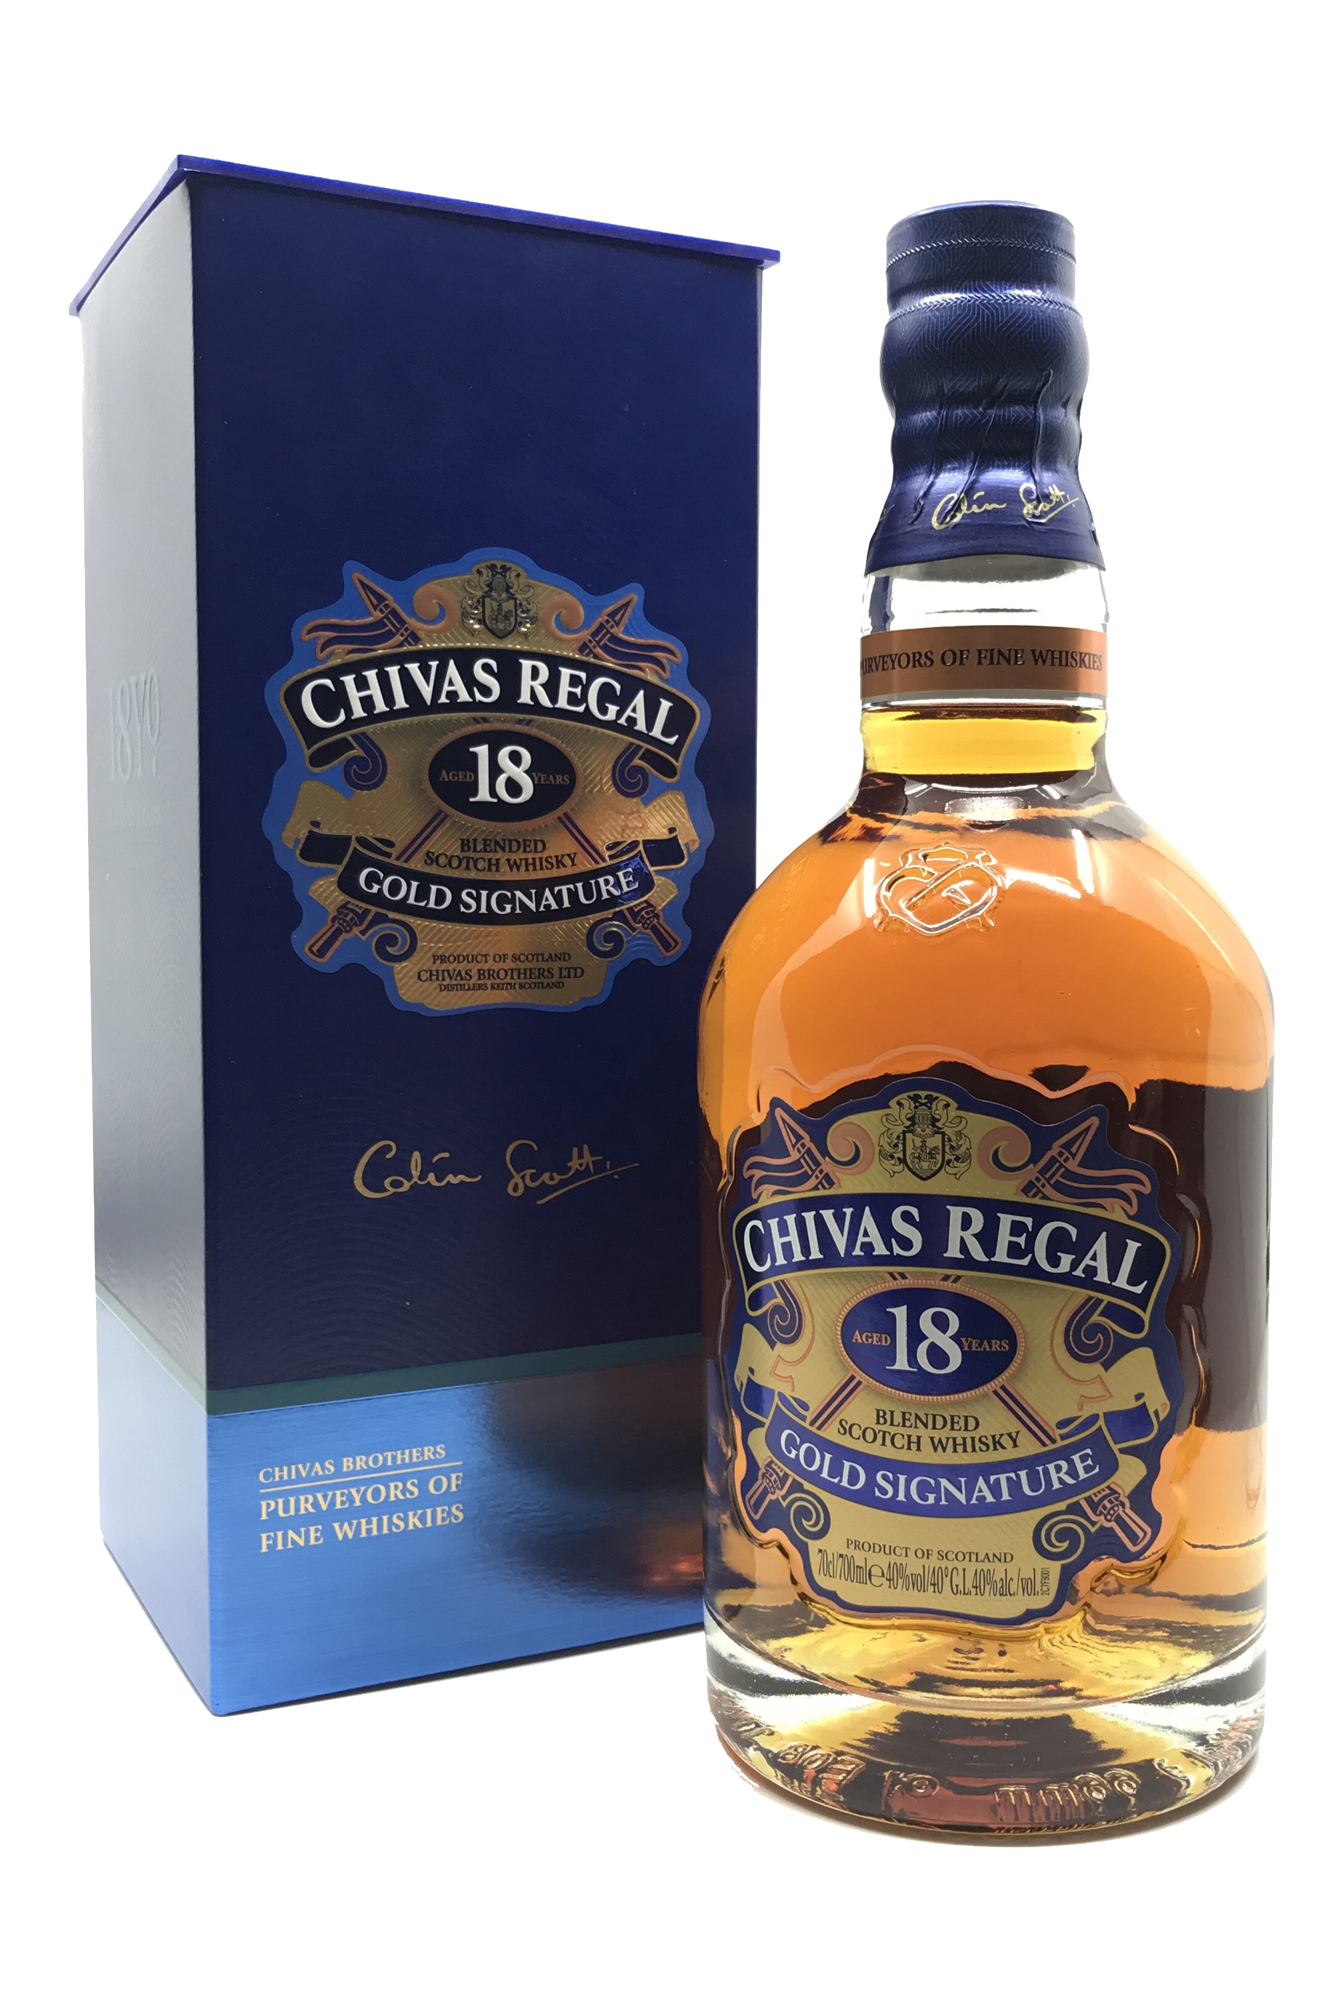 Chivas Regal 18 Jahre Gold Signature - Blended Scotch Whisky - 40% vol. Alk. - 0,7l - front